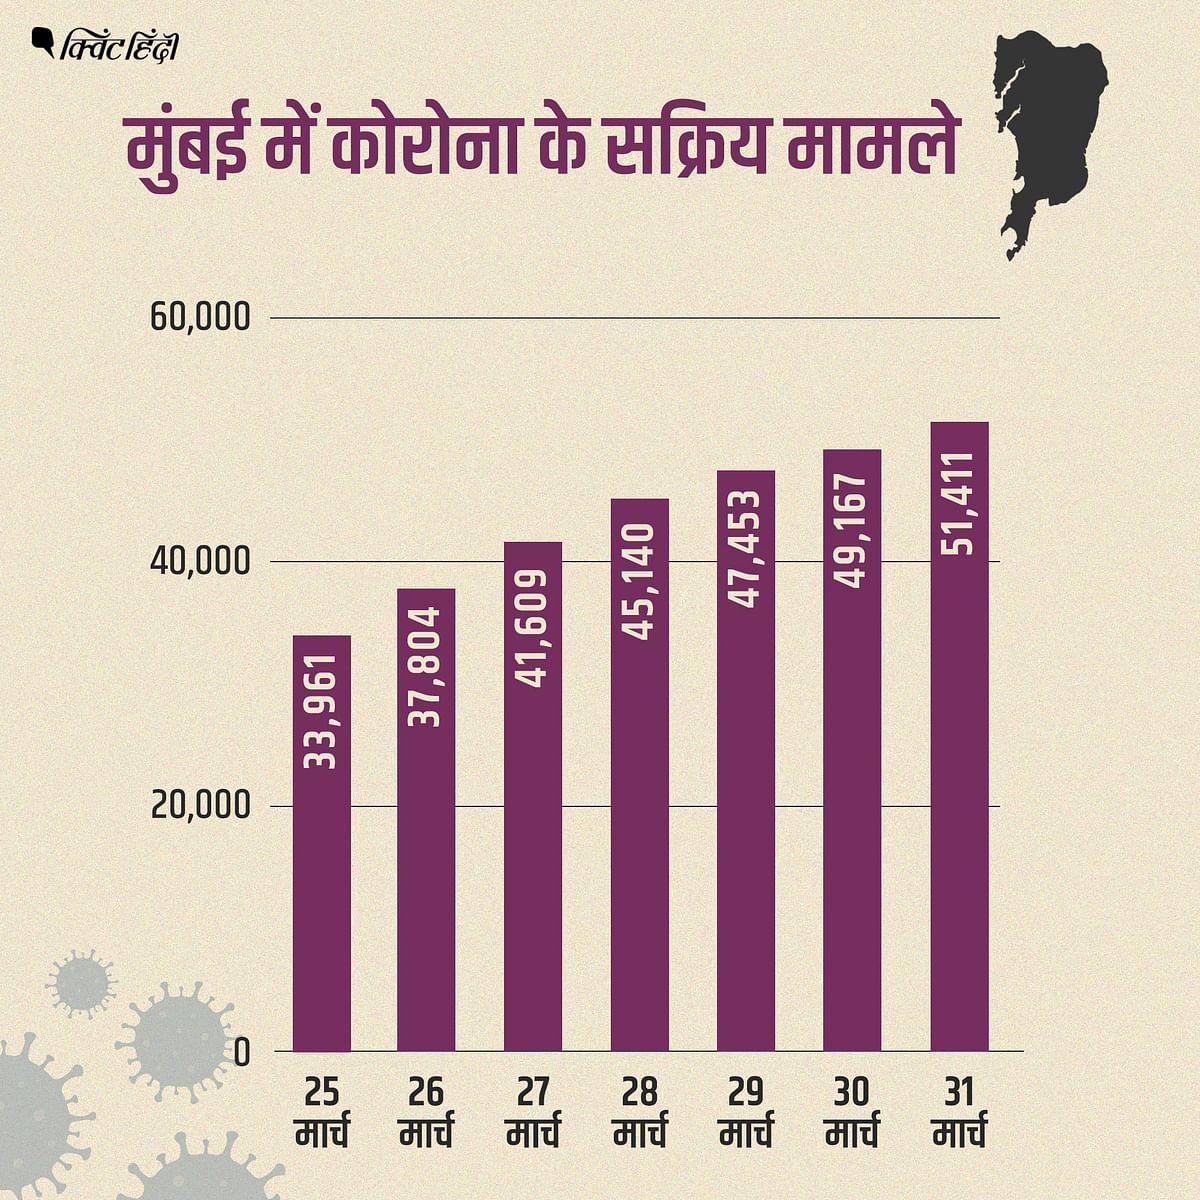 महाराष्ट्र ने मार्च 2021 में कोरोना मामलों की सबसे बड़ी बढ़त दर्ज की है.